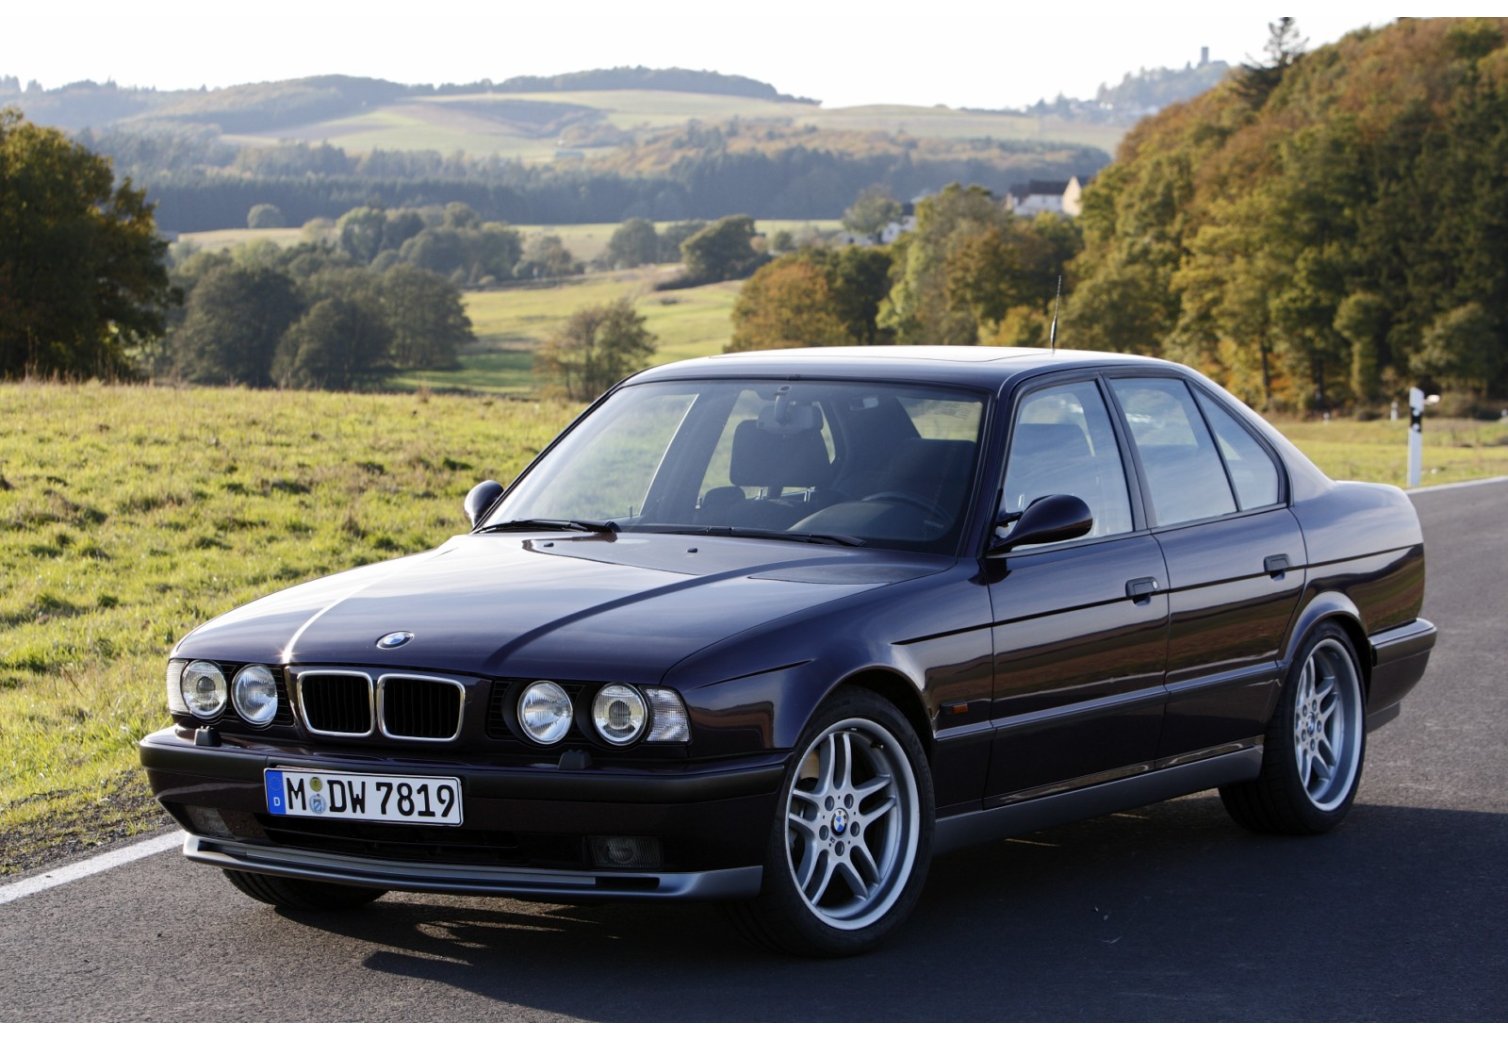 4 TAPIS SOL BMW SERIE 5 E34 1988-1995 520i 524td 525i MOQUETTE NOIR SUR MESURE 